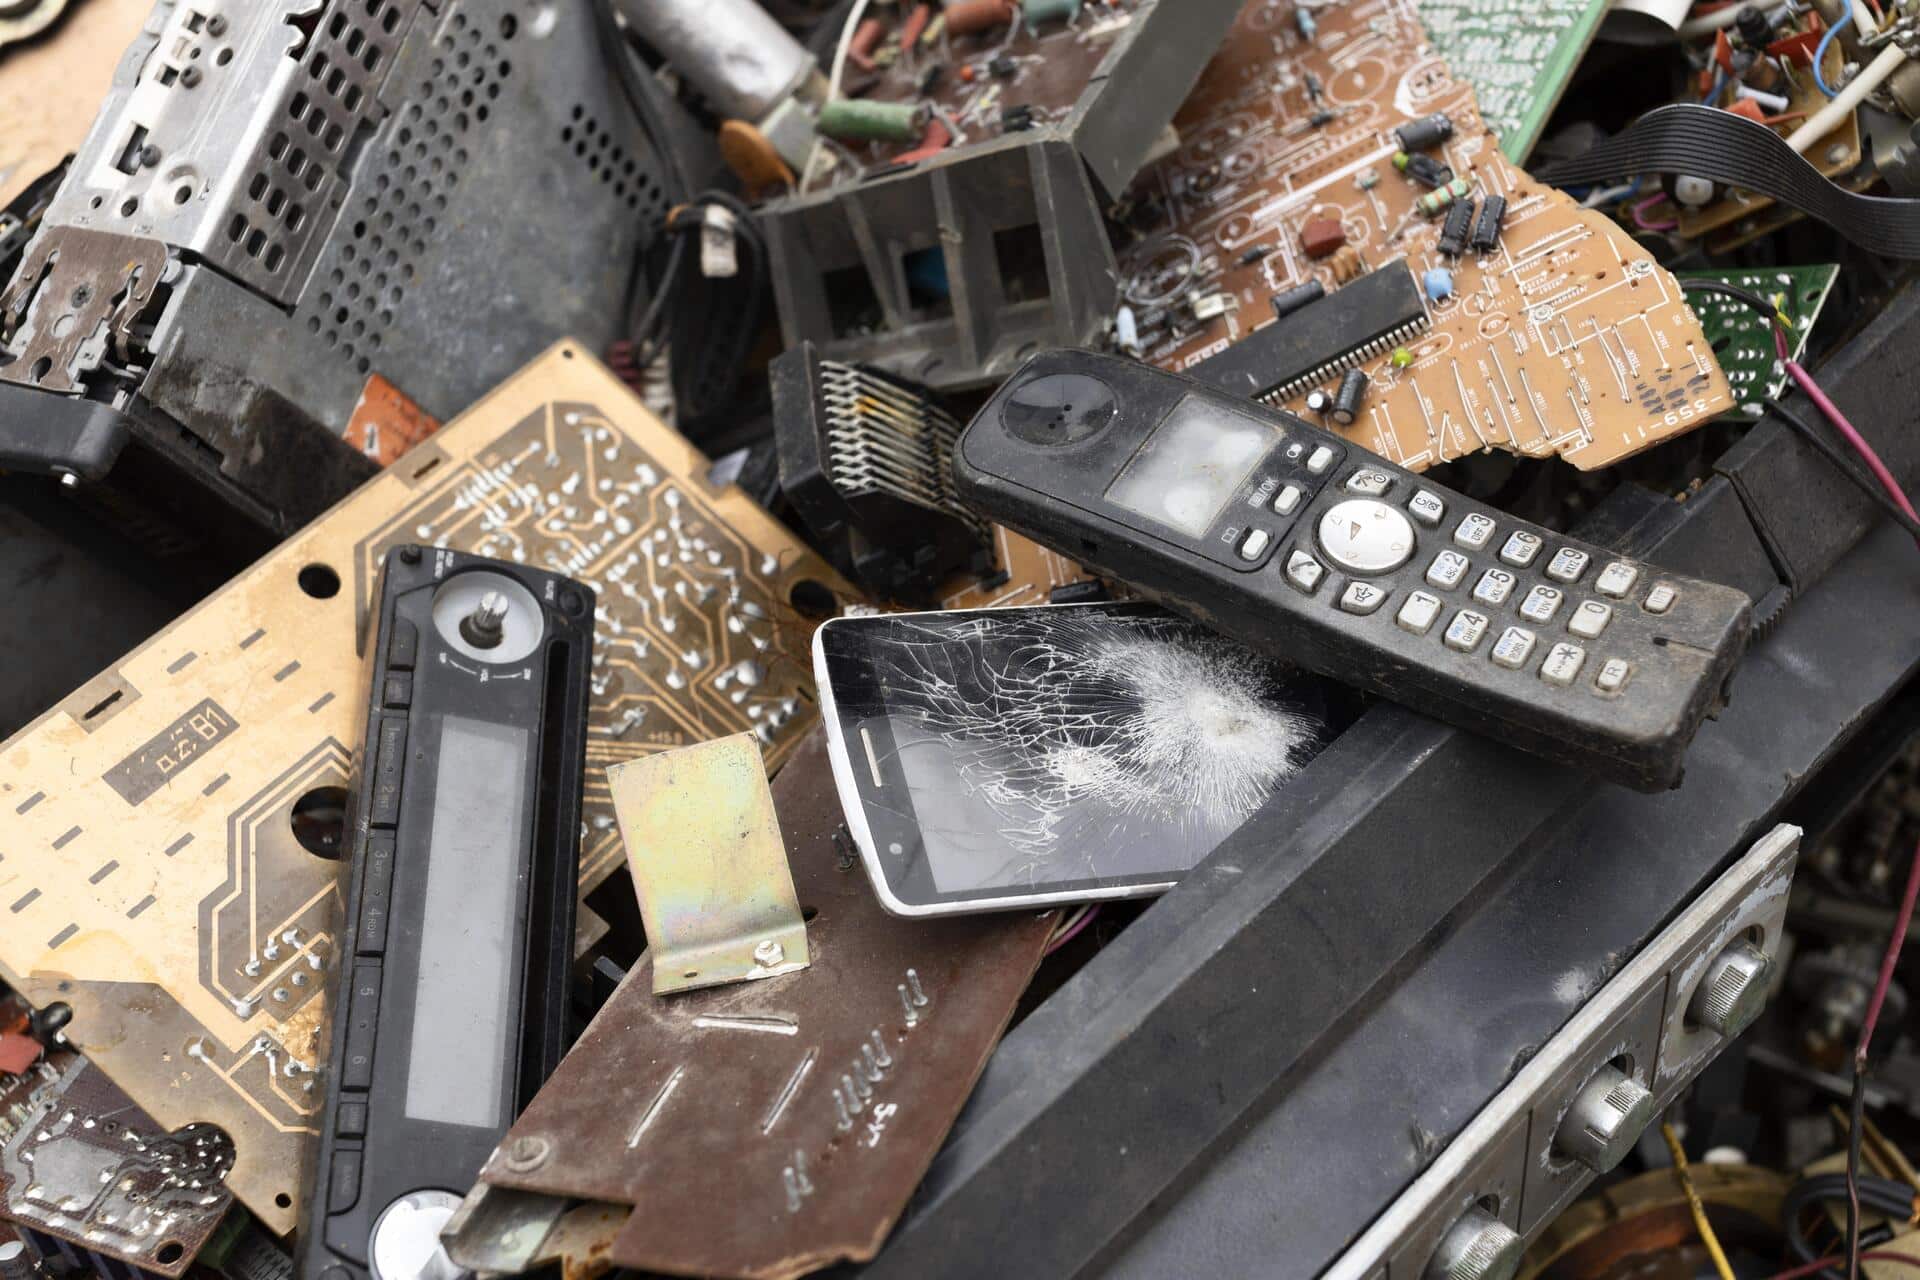 Foto de equipamentos eletroeletrônicos, como celulares, telefones e placas de computadores, que chegaram ao fim da vida útil e se tornaram lixo eletrônico